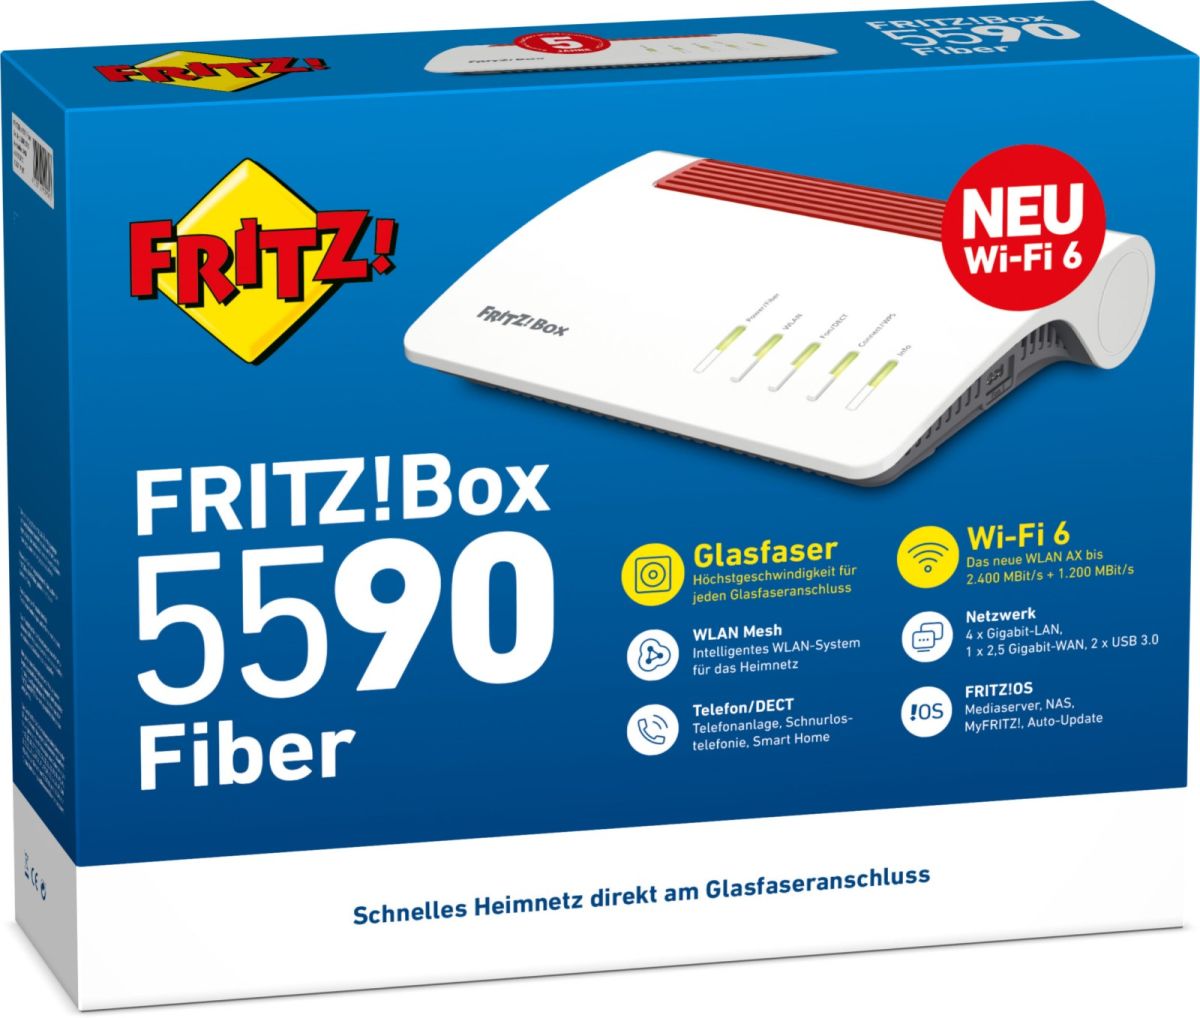 WLAN Router FRITZ!Box 5590 FIBER